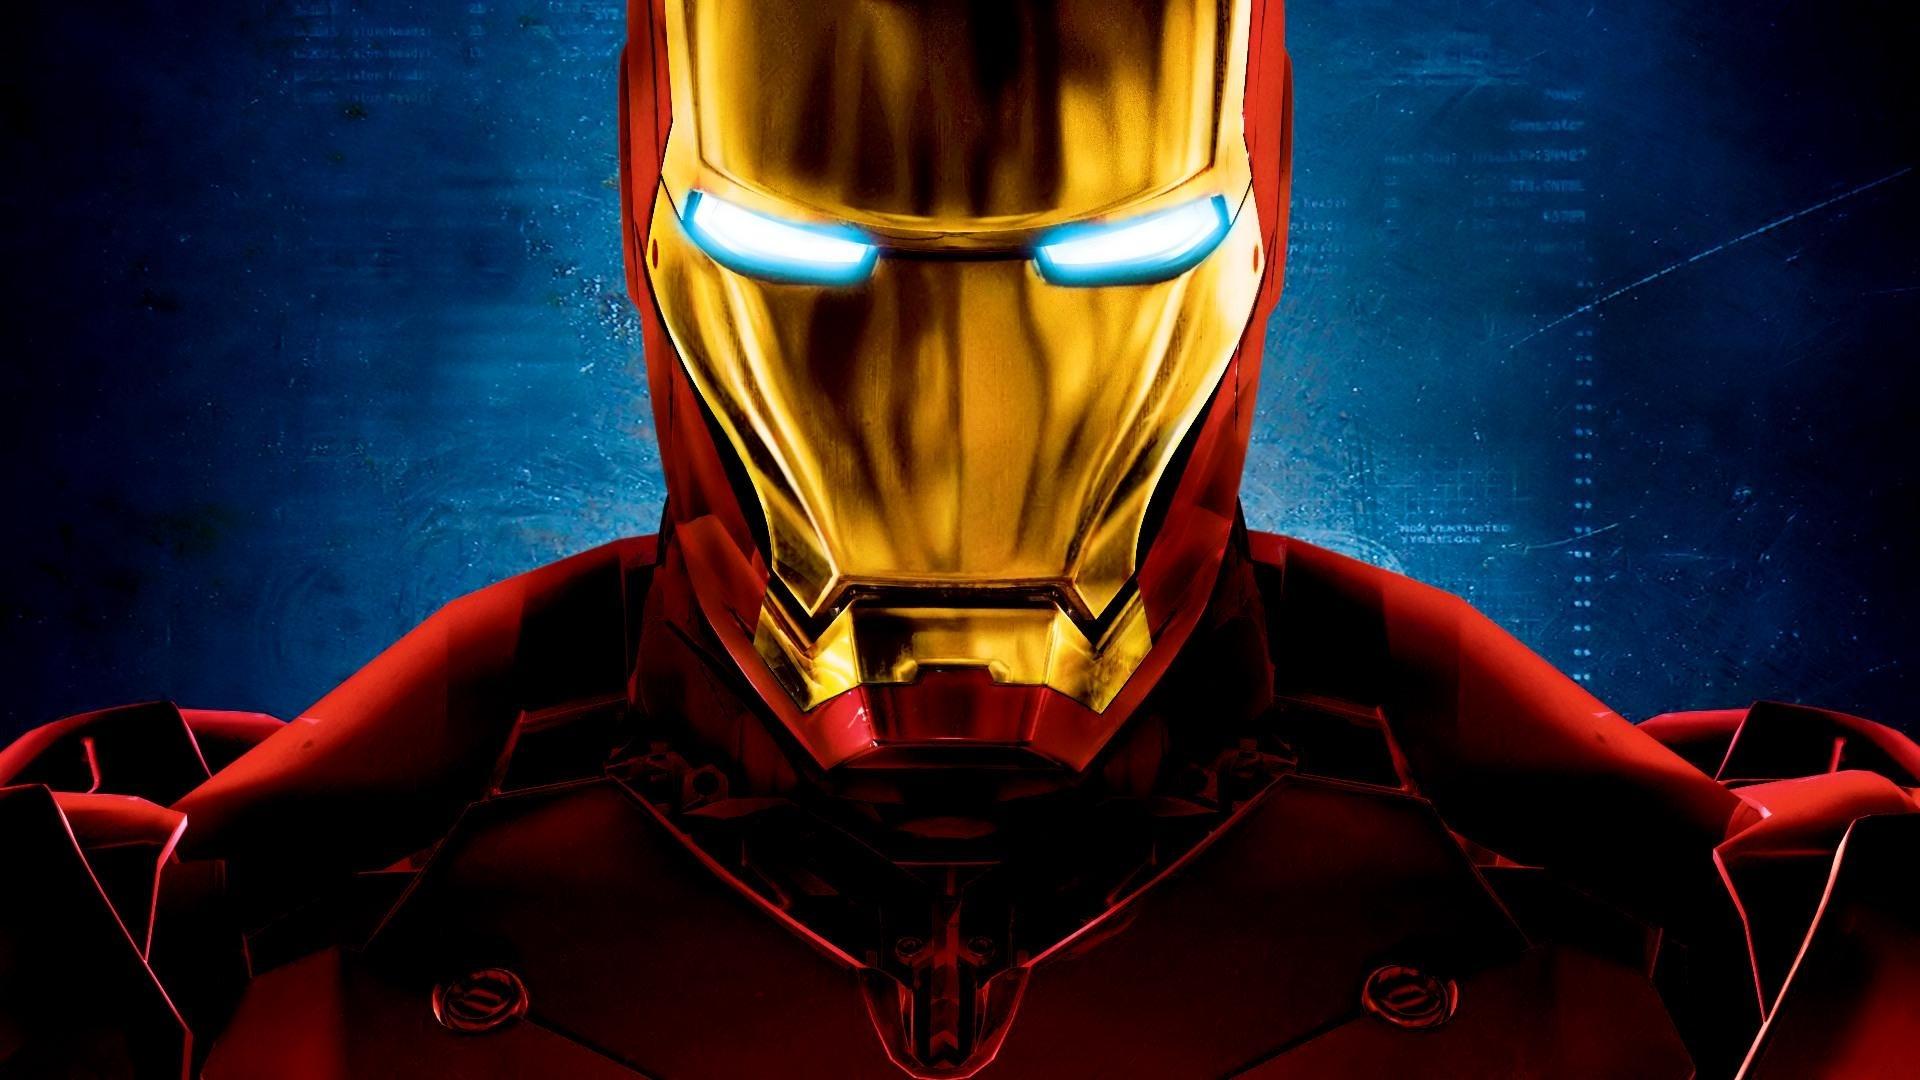 دانلود فیلم Iron Man 2008